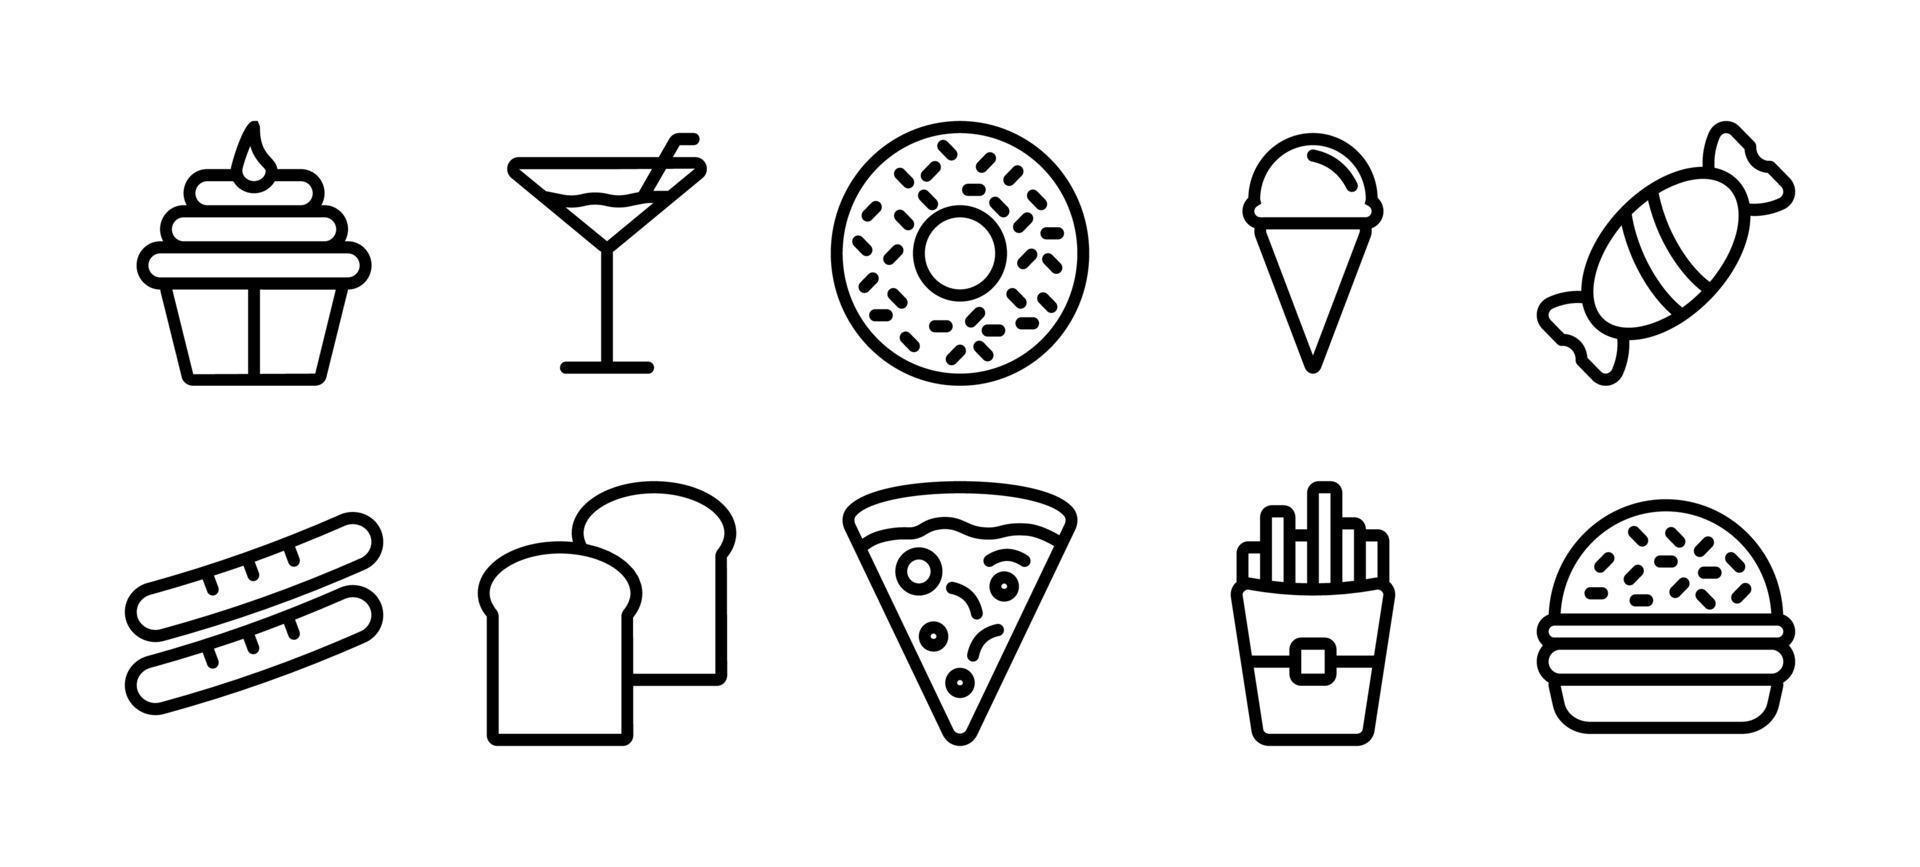 Reihe von Lebensmittelsymbolen. Thin Line Food Icons Collection, Set von Food Icon Collection in schwarzer Farbe für Website-Design, Designelemente für Ihre Projekte. vektorillustration, lebensmittelikone in der modernen einfachen vektor